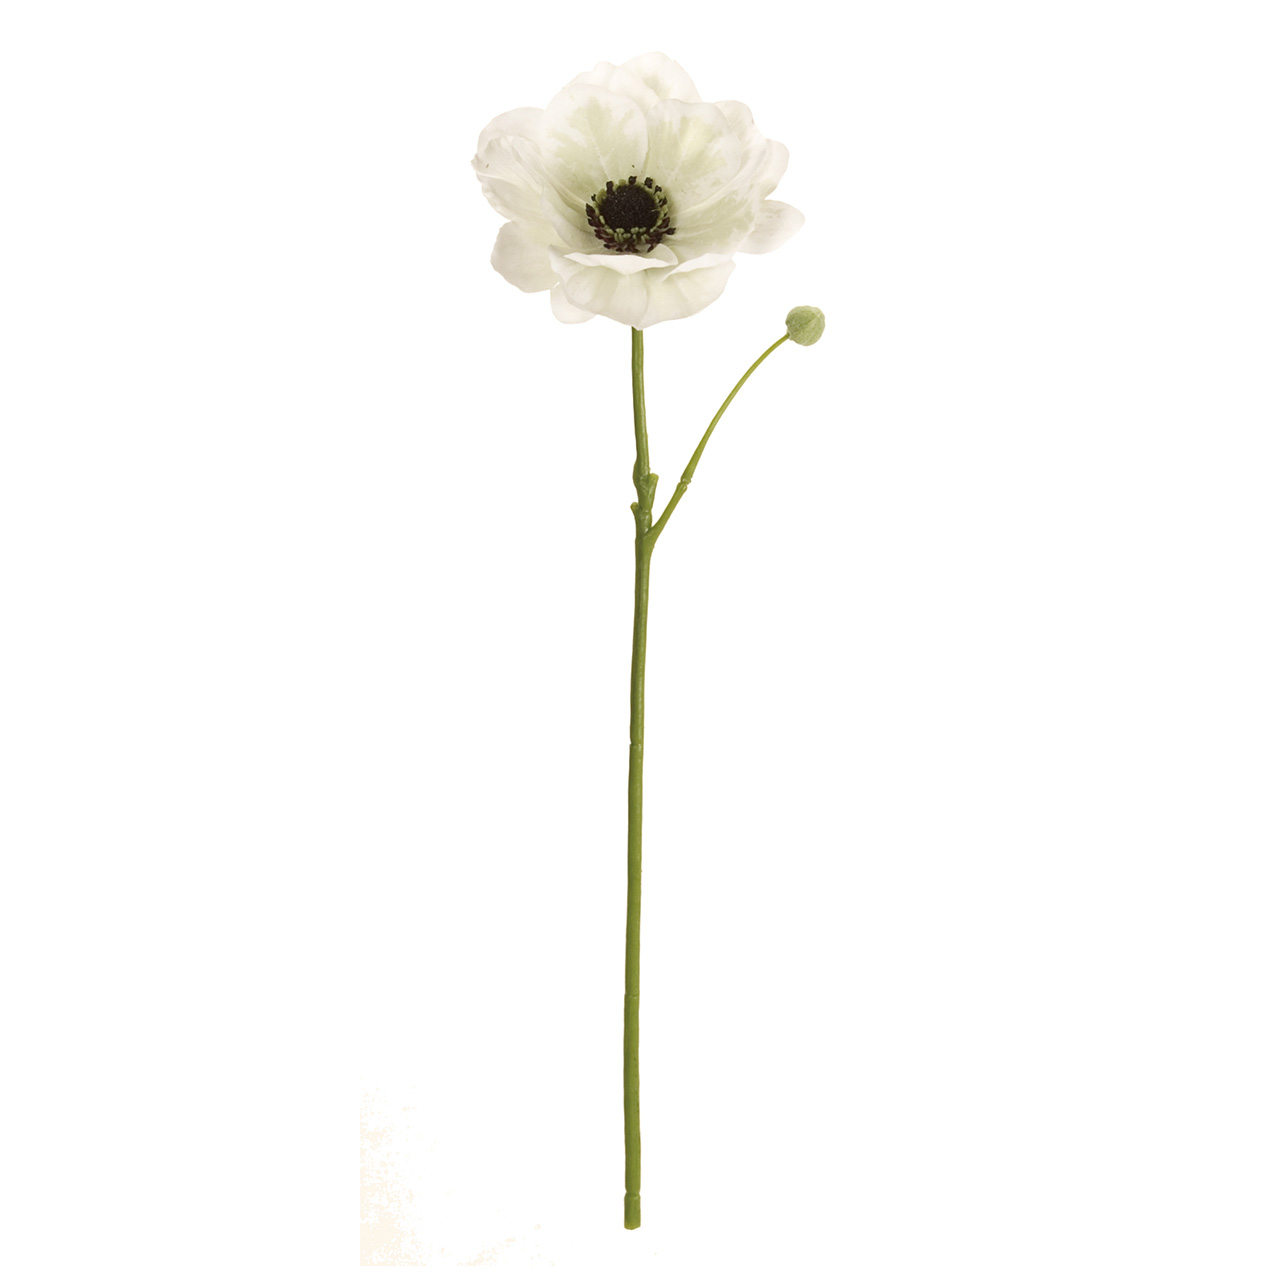 マイフラ 通販 Magiq デューブライト アネモネ ホワイト アーティフィシャルフラワー 造花 Fm 001 ホワイト Magiq アーティフィシャルフラワー 造花 全国にmagiq 花器 花資材などをお届けします